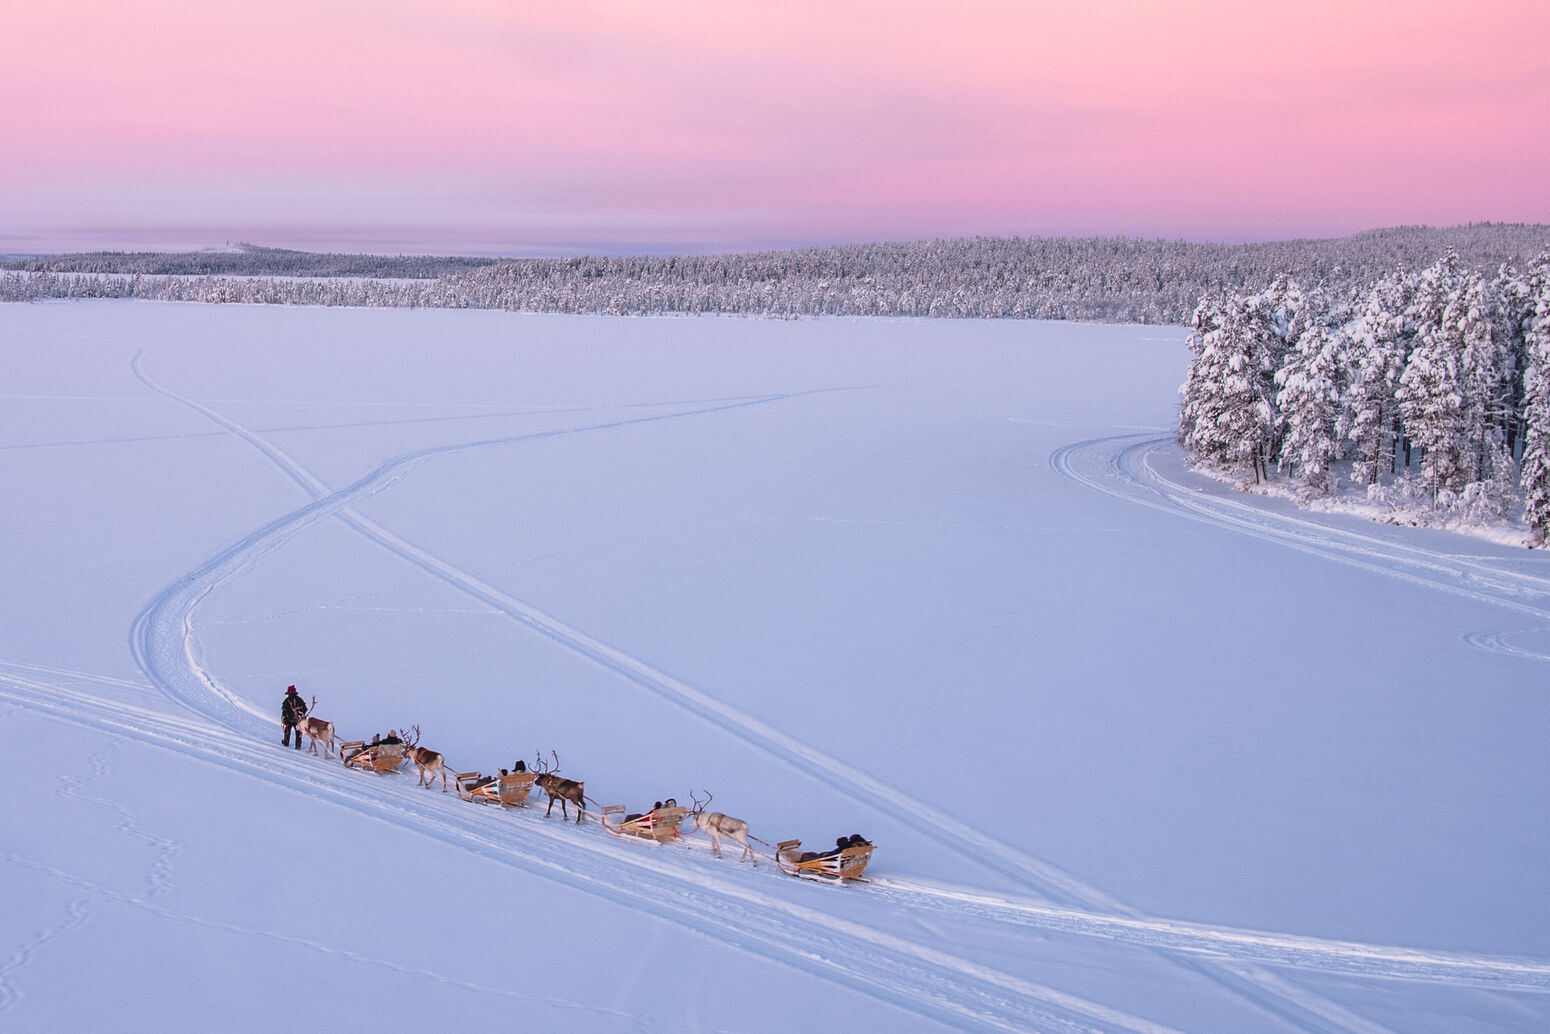 antti pietikäinen, drone winter 2018, harriniva, reindeer safari, torassieppi